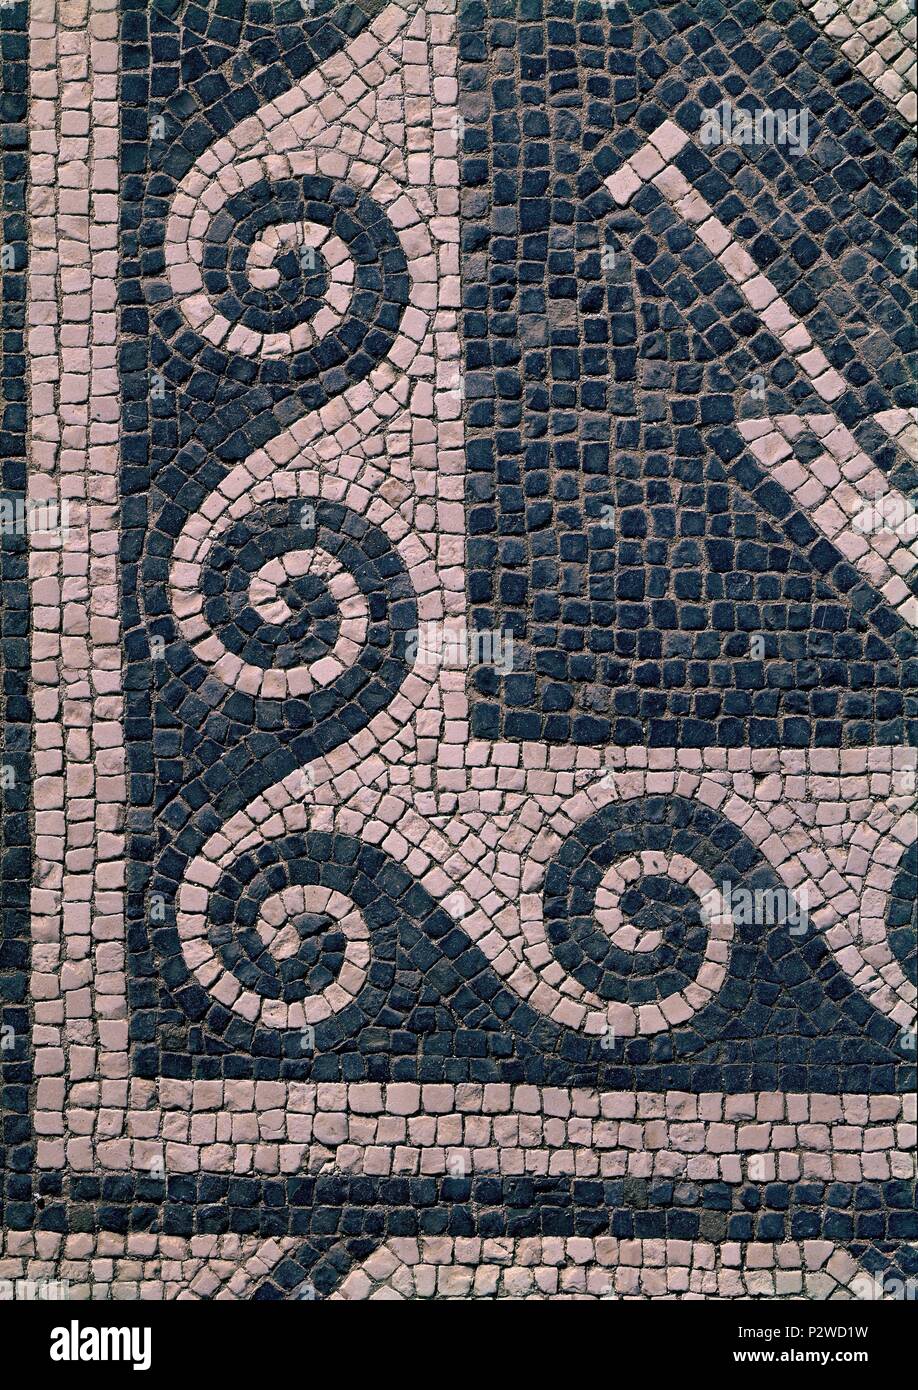 https://c8.alamy.com/comp/P2WD1W/mosaico-romano-detalle-de-la-greca-location-exterior-ampurias-gerona-spain-P2WD1W.jpg